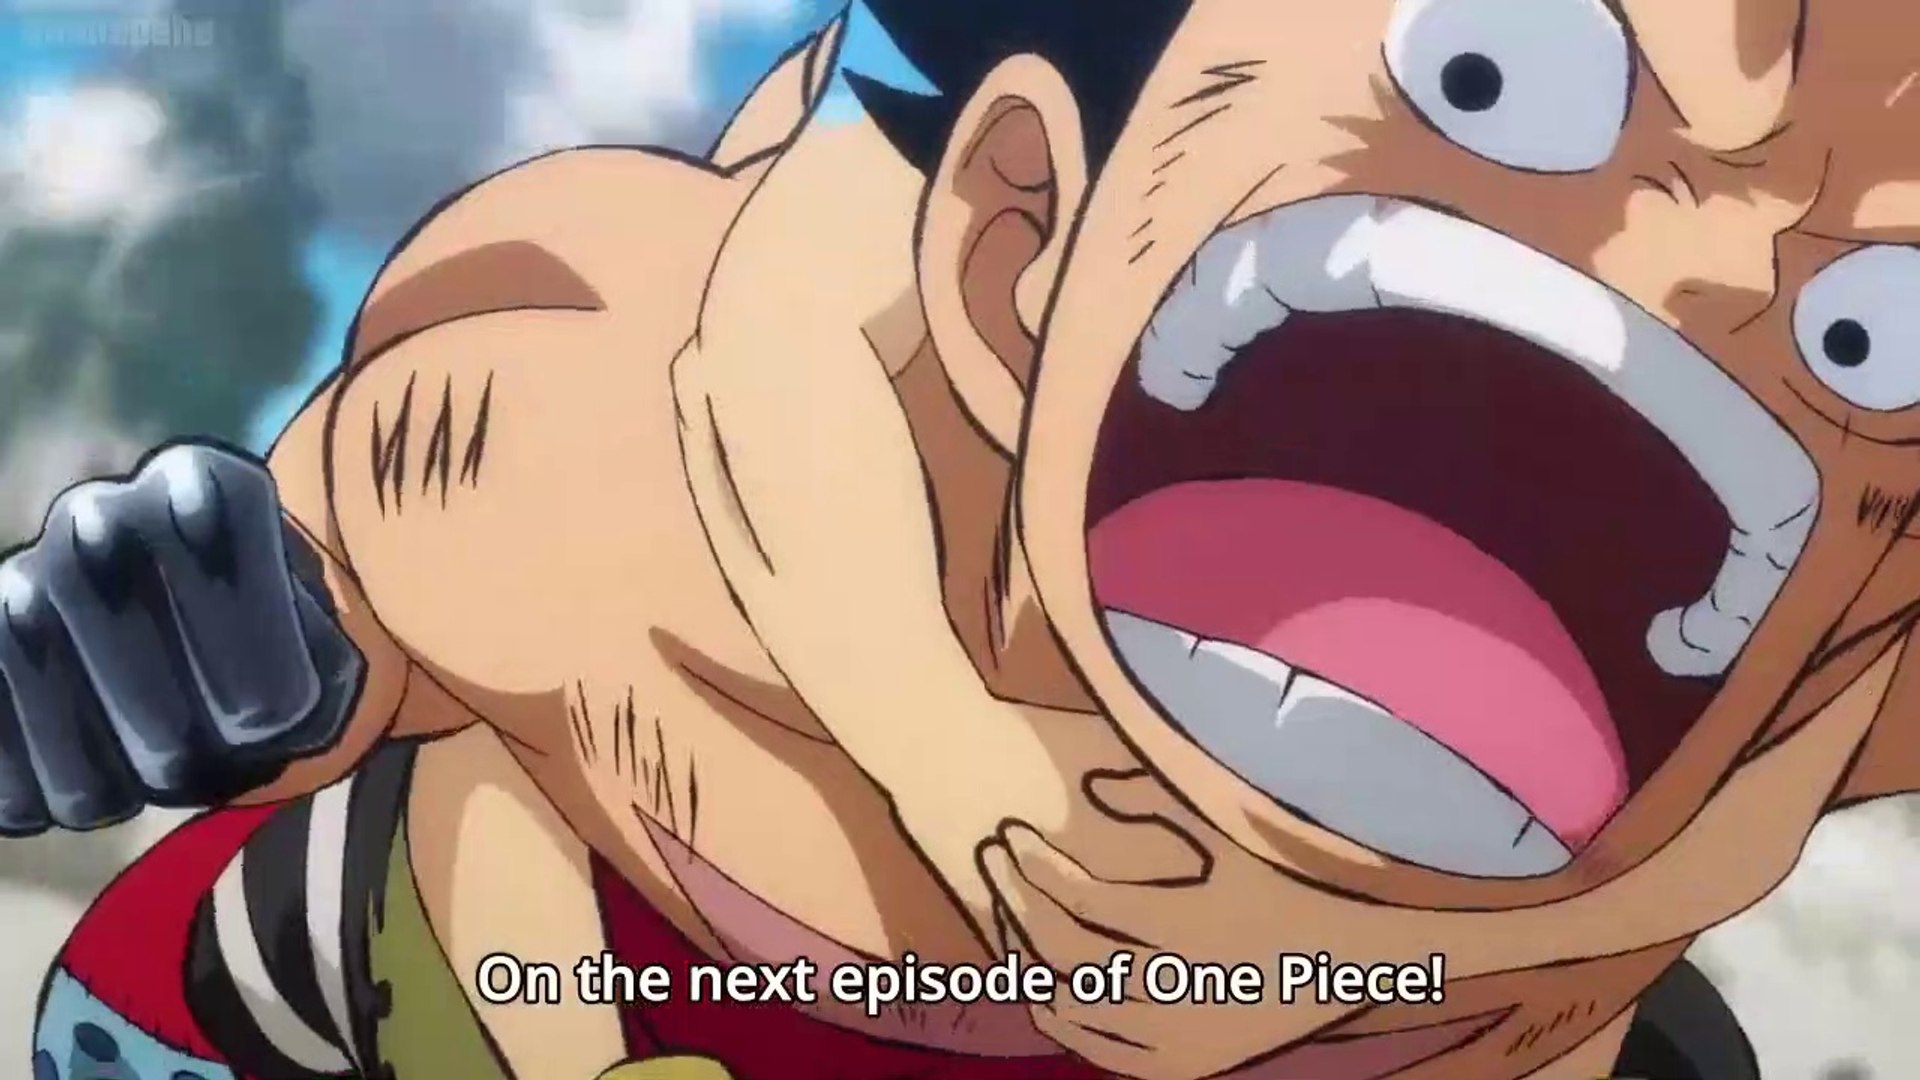 Watch One Piece Episode 596 Online